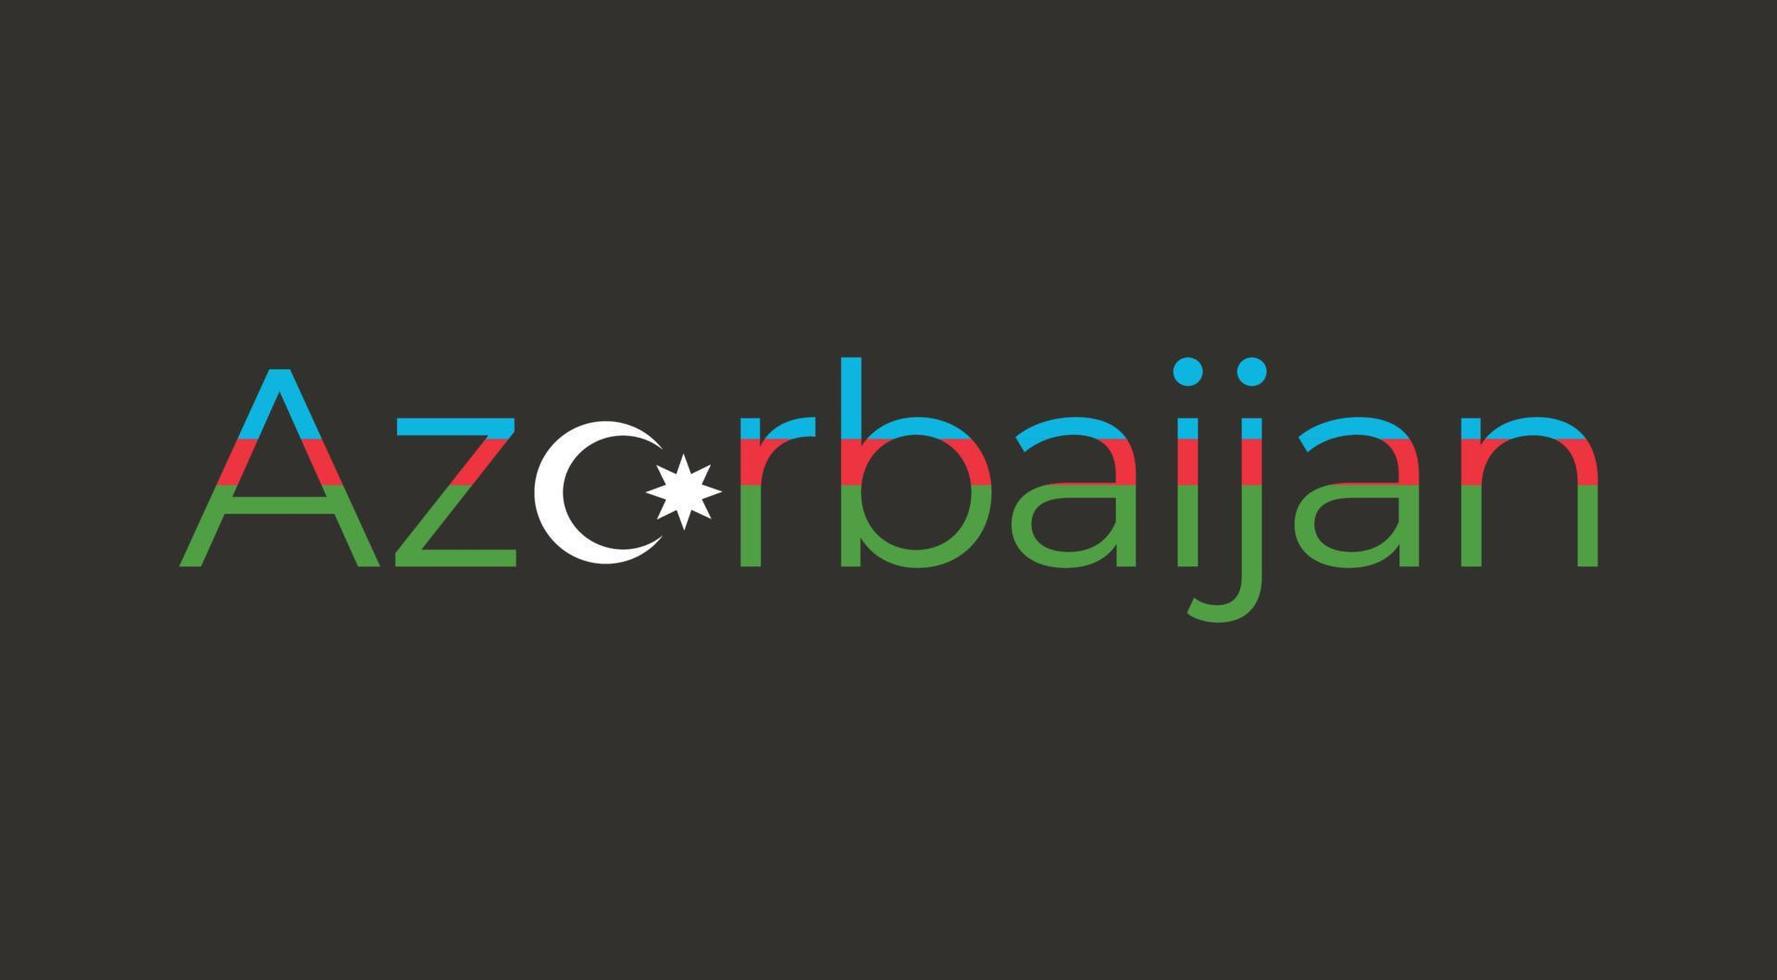 typografi design av azerbaijan vektor